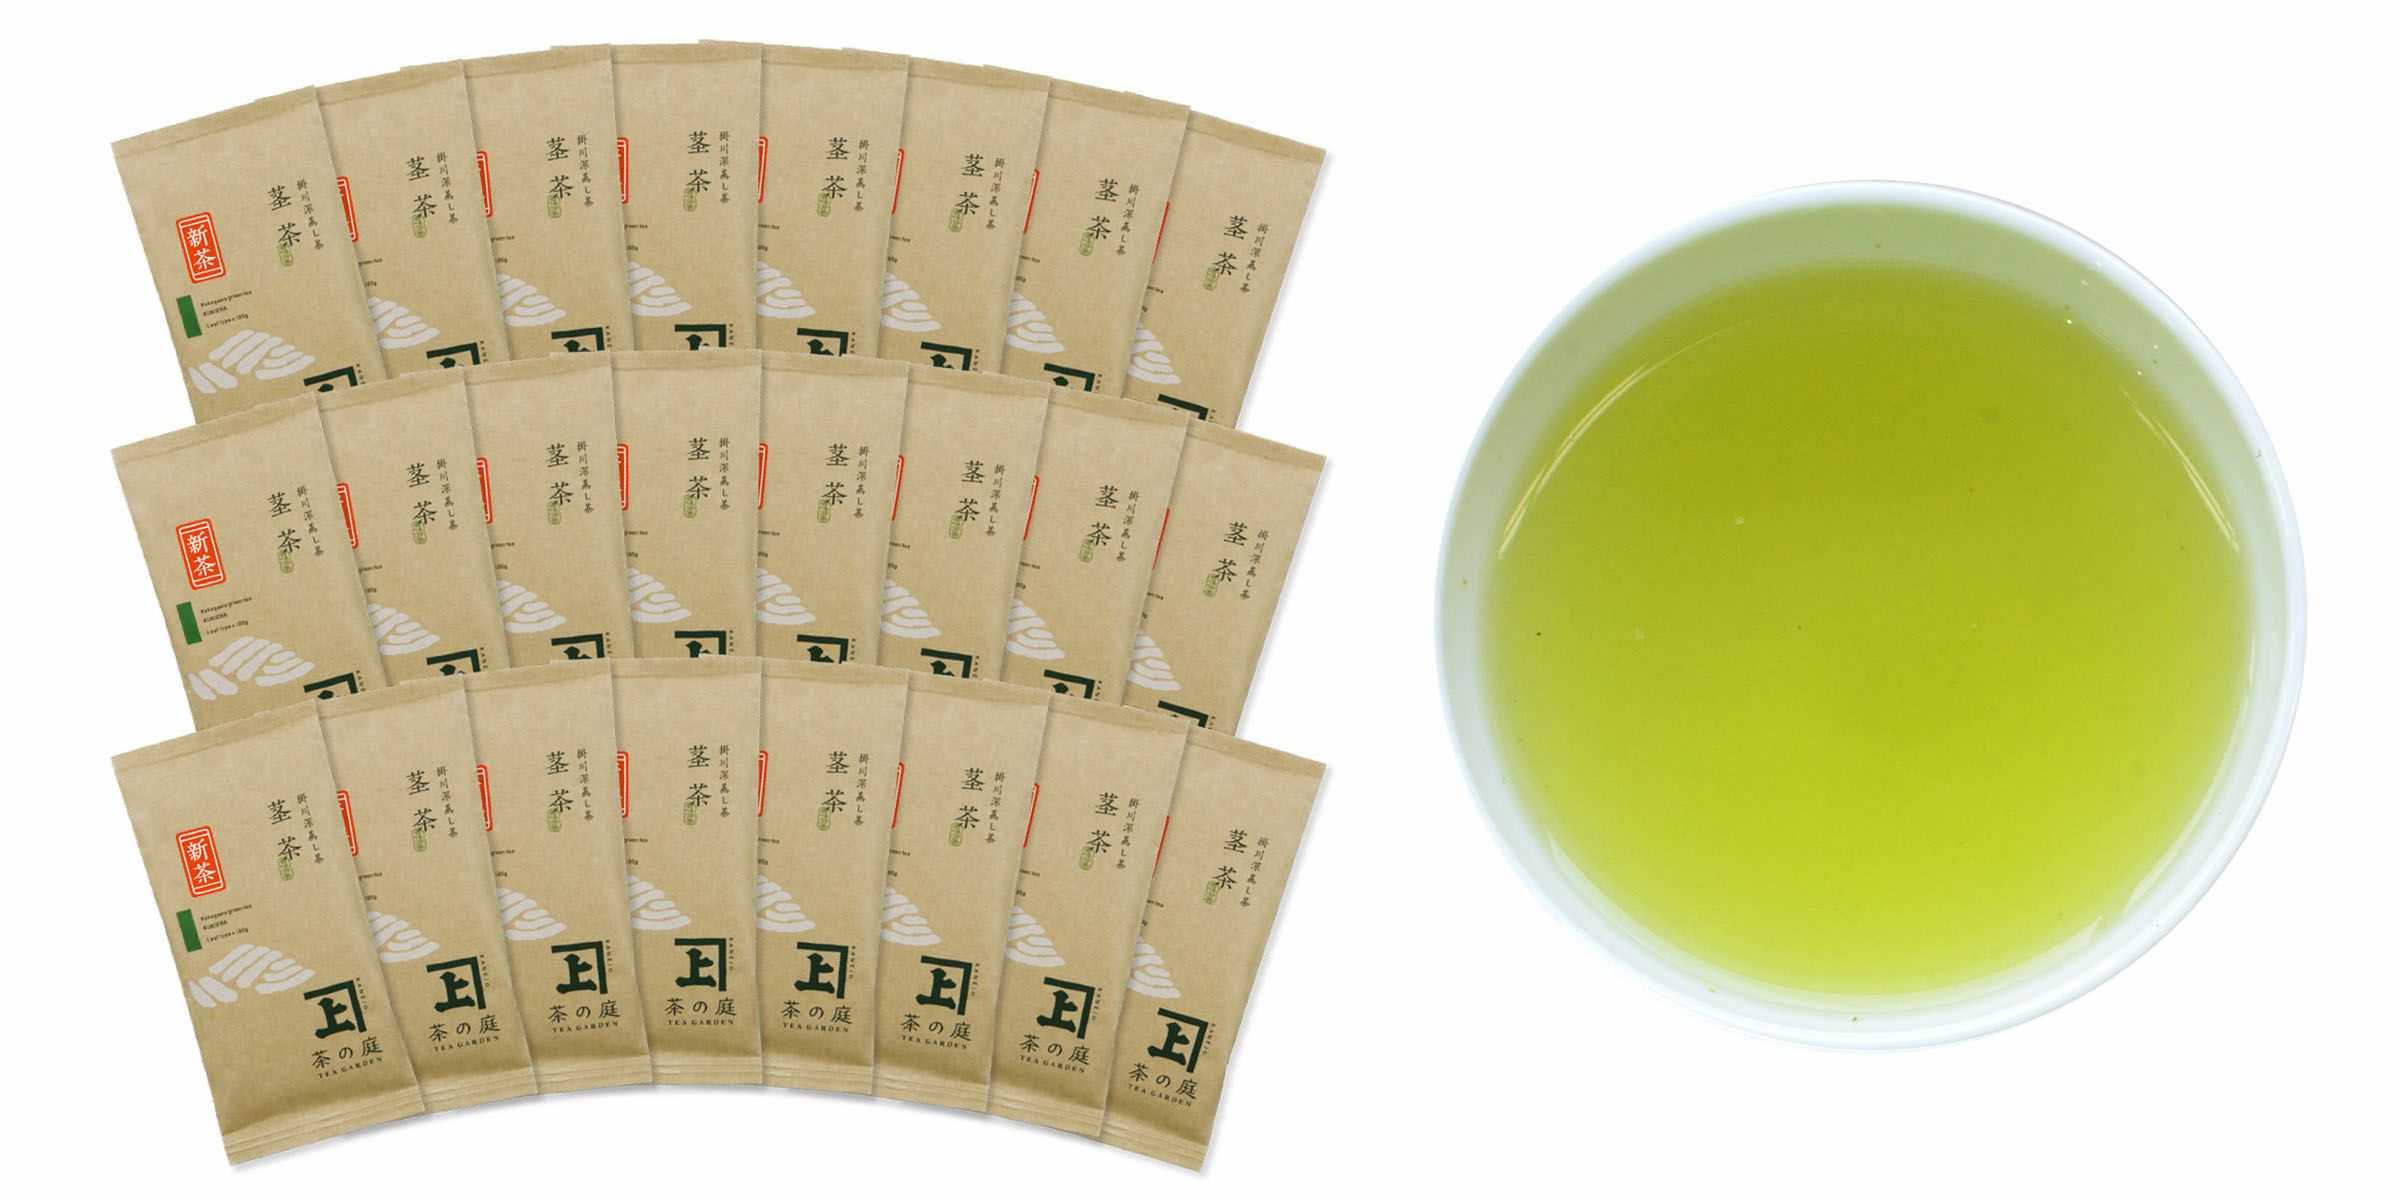 【5月21日頃から順次発送】新茶 茎茶100g 24袋セット